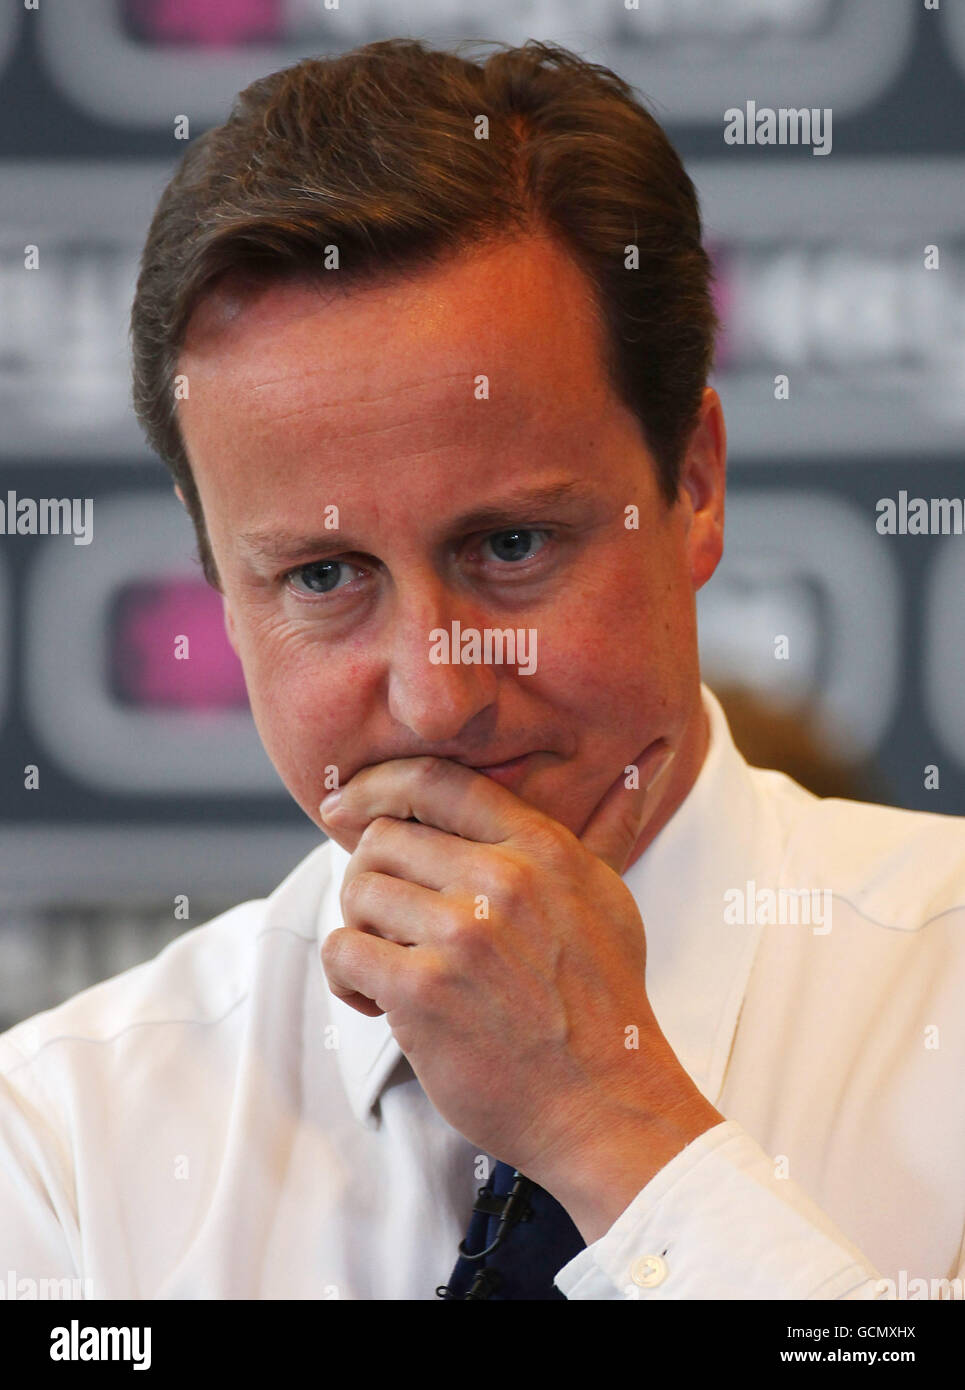 Premierminister David Cameron hält einen PM Direct am Manchester Convention Center (Manchester Central). Der Premierminister enthüllte eine Niederschlagung von Sozialleistungsbetrügern, die private Kreditvermittlungsagenturen zur Aufdeckung betrügerischer Ansprüche verwendeten. Stockfoto